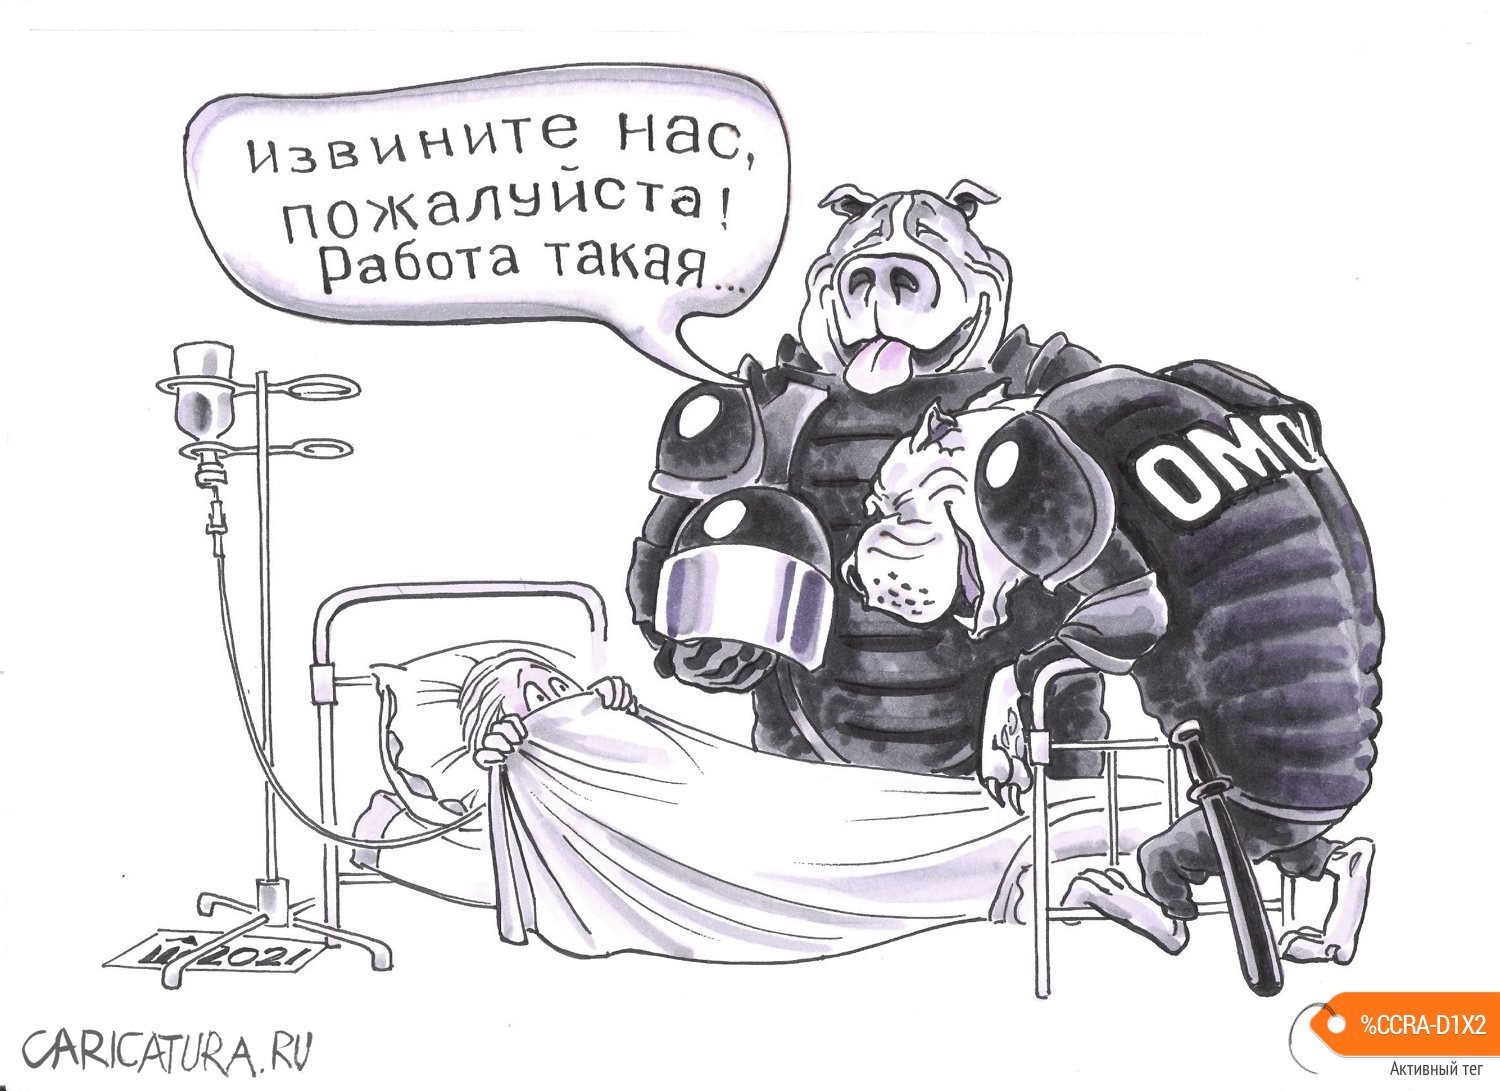 Карикатура "Собачья жизнь", Алексей Шишкарёв